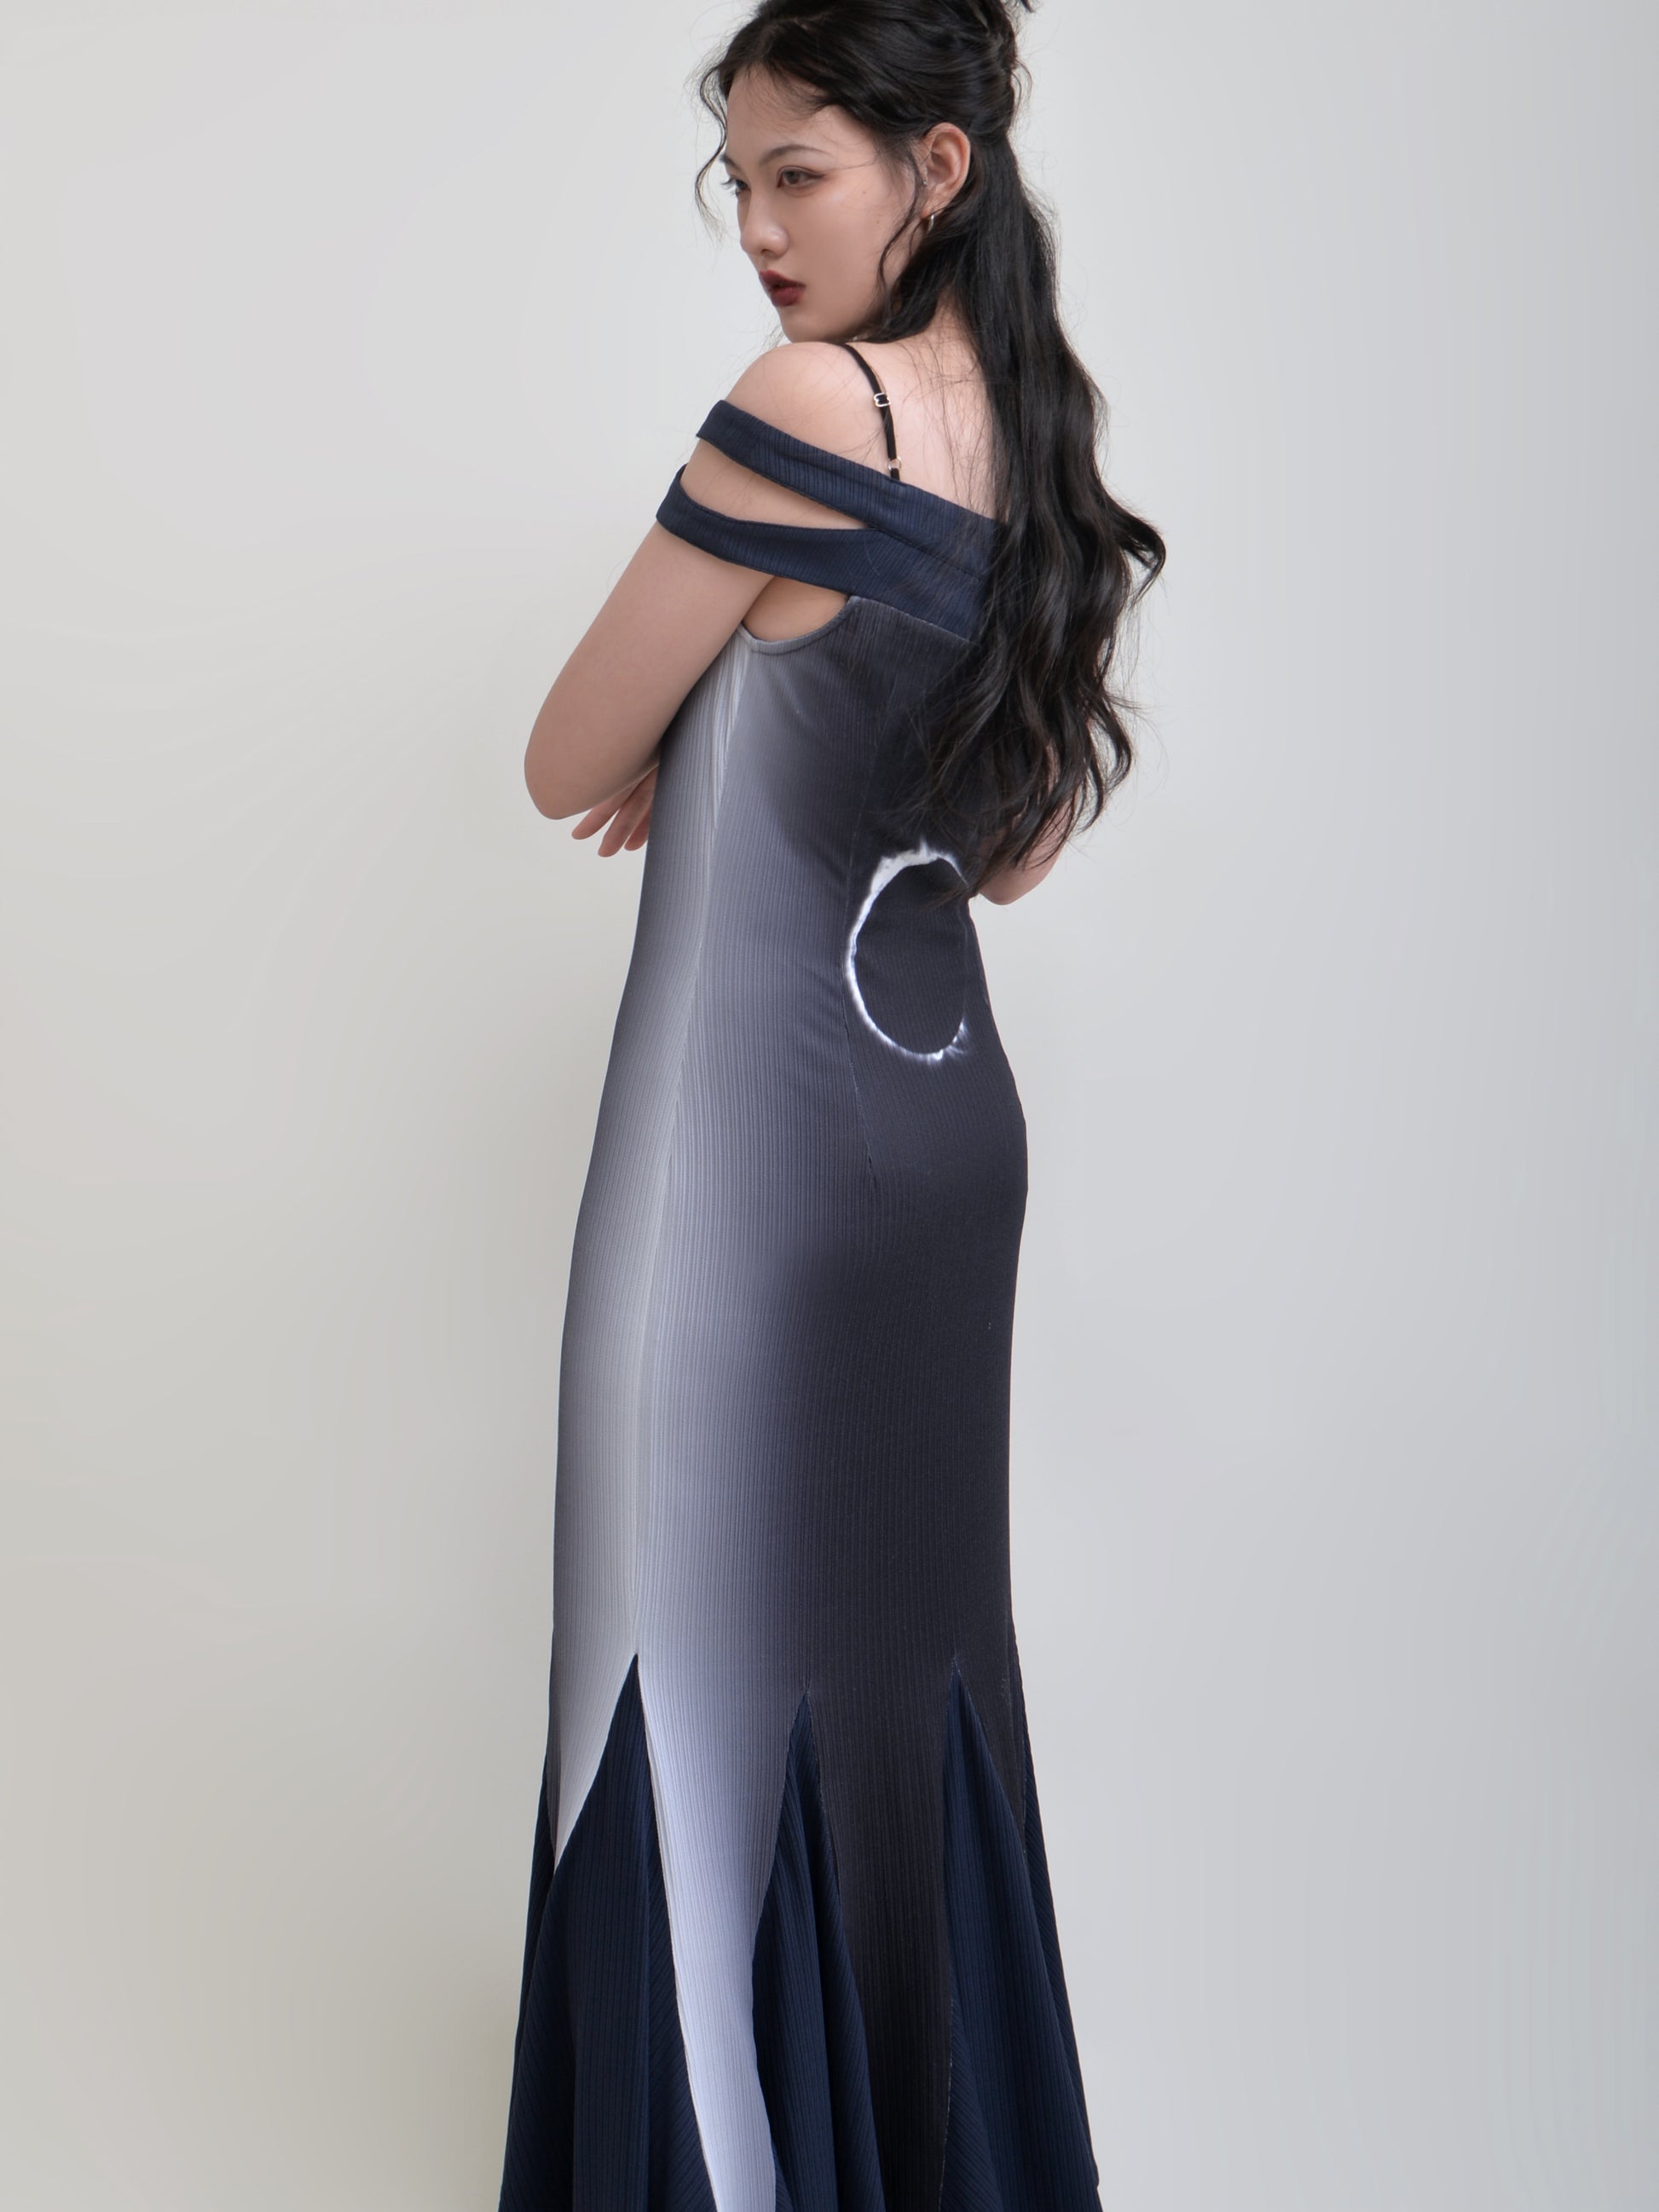 Printed Stitching Suspenders Elastic Mermaid Dress